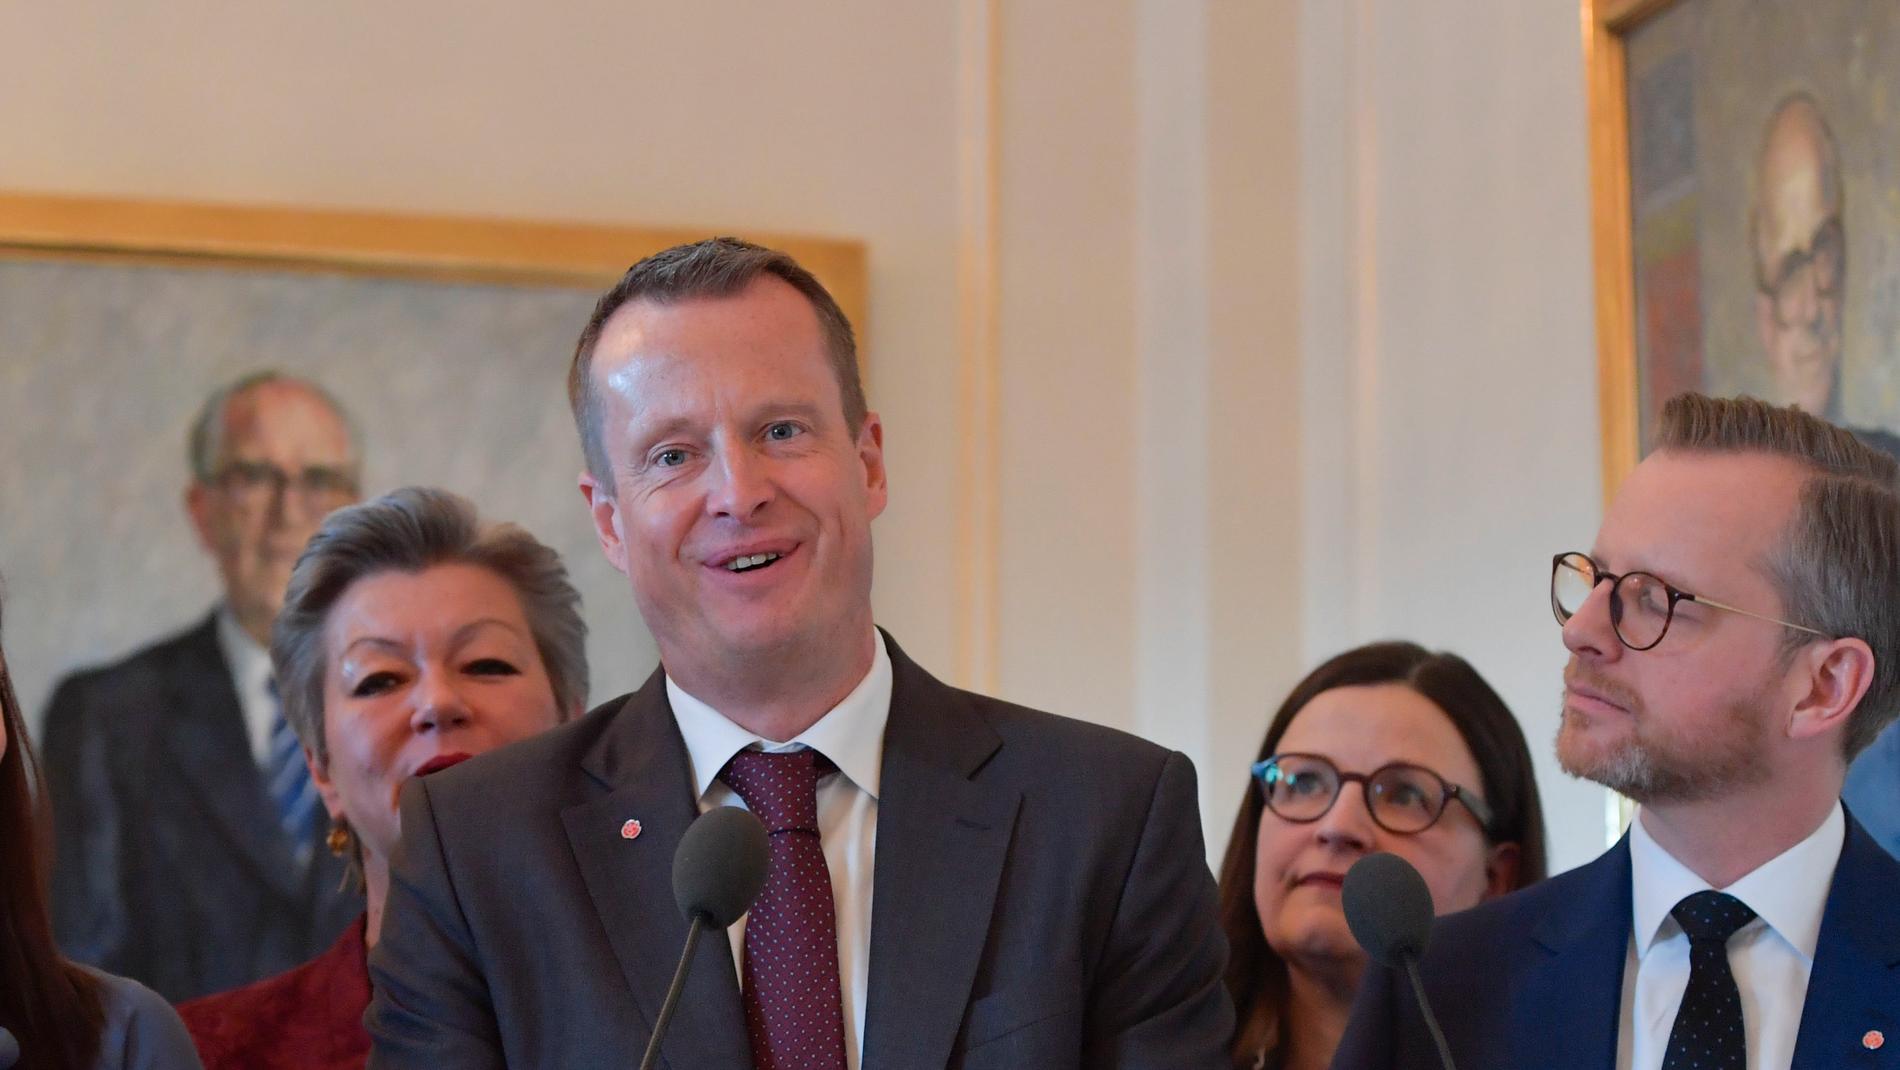 "Jag vill jobba för att Sverige blir starkare, smartare och grönare", säger nygamle S-ministern Anders Ygeman.